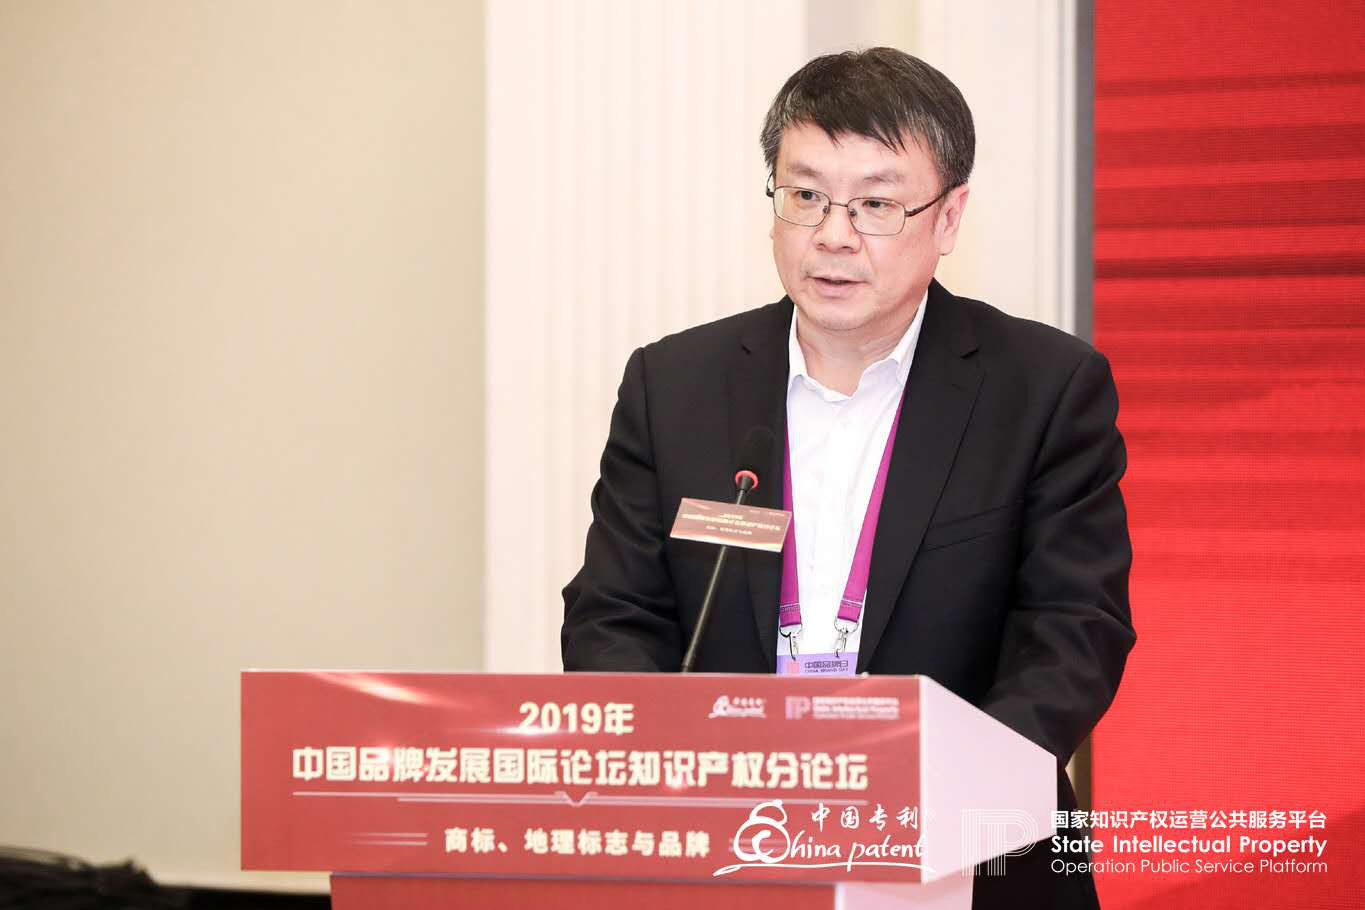 2019年中国品牌发展国际论坛知识产权分论坛在沪成功举办